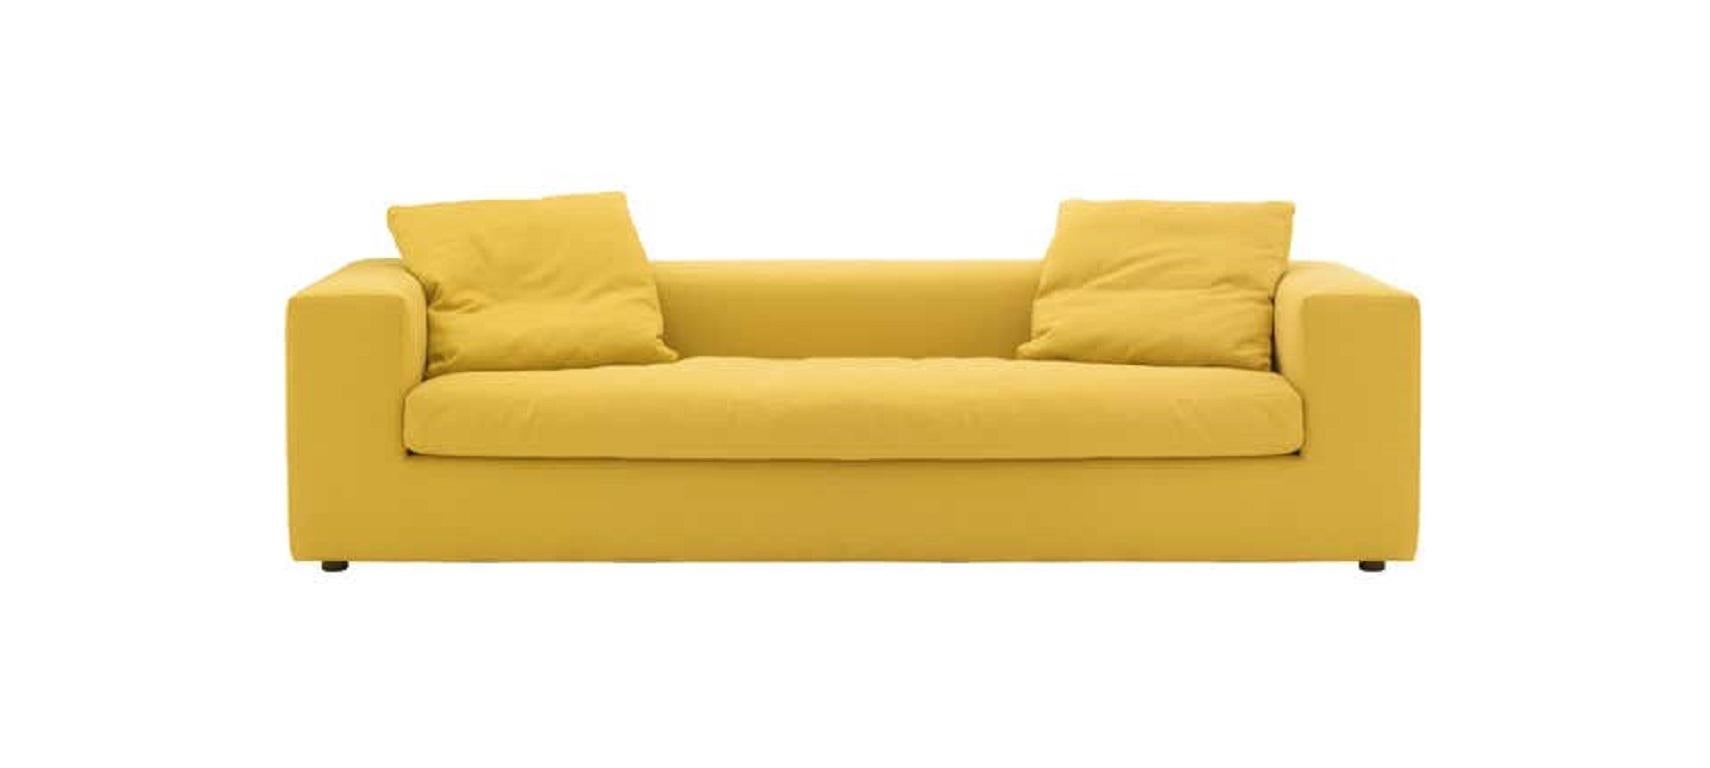 cappellini sofa bed